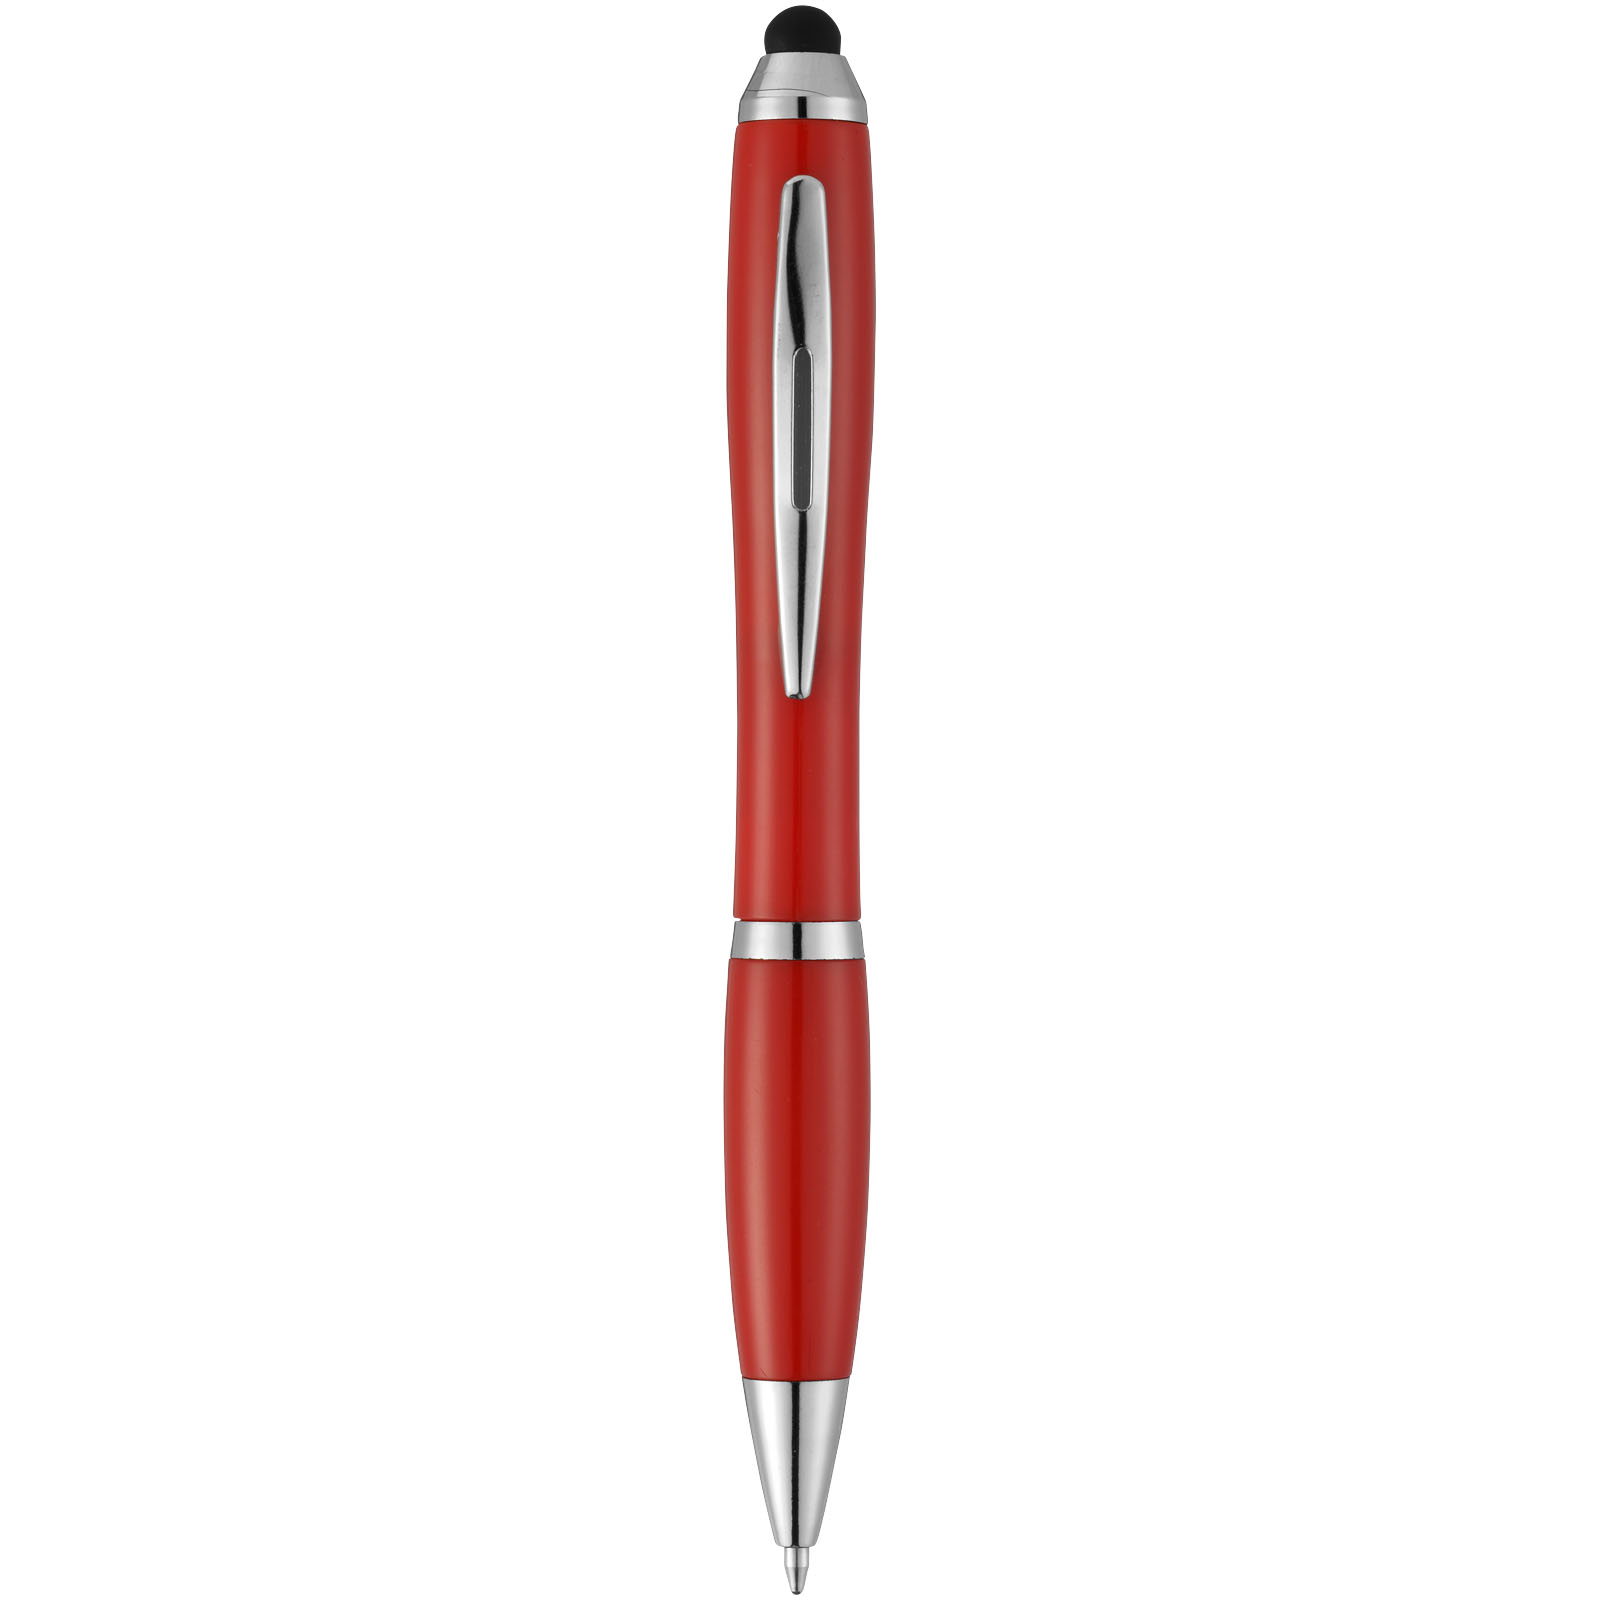 Ballpoint Pens - Nash stylus ballpoint pen with coloured grip